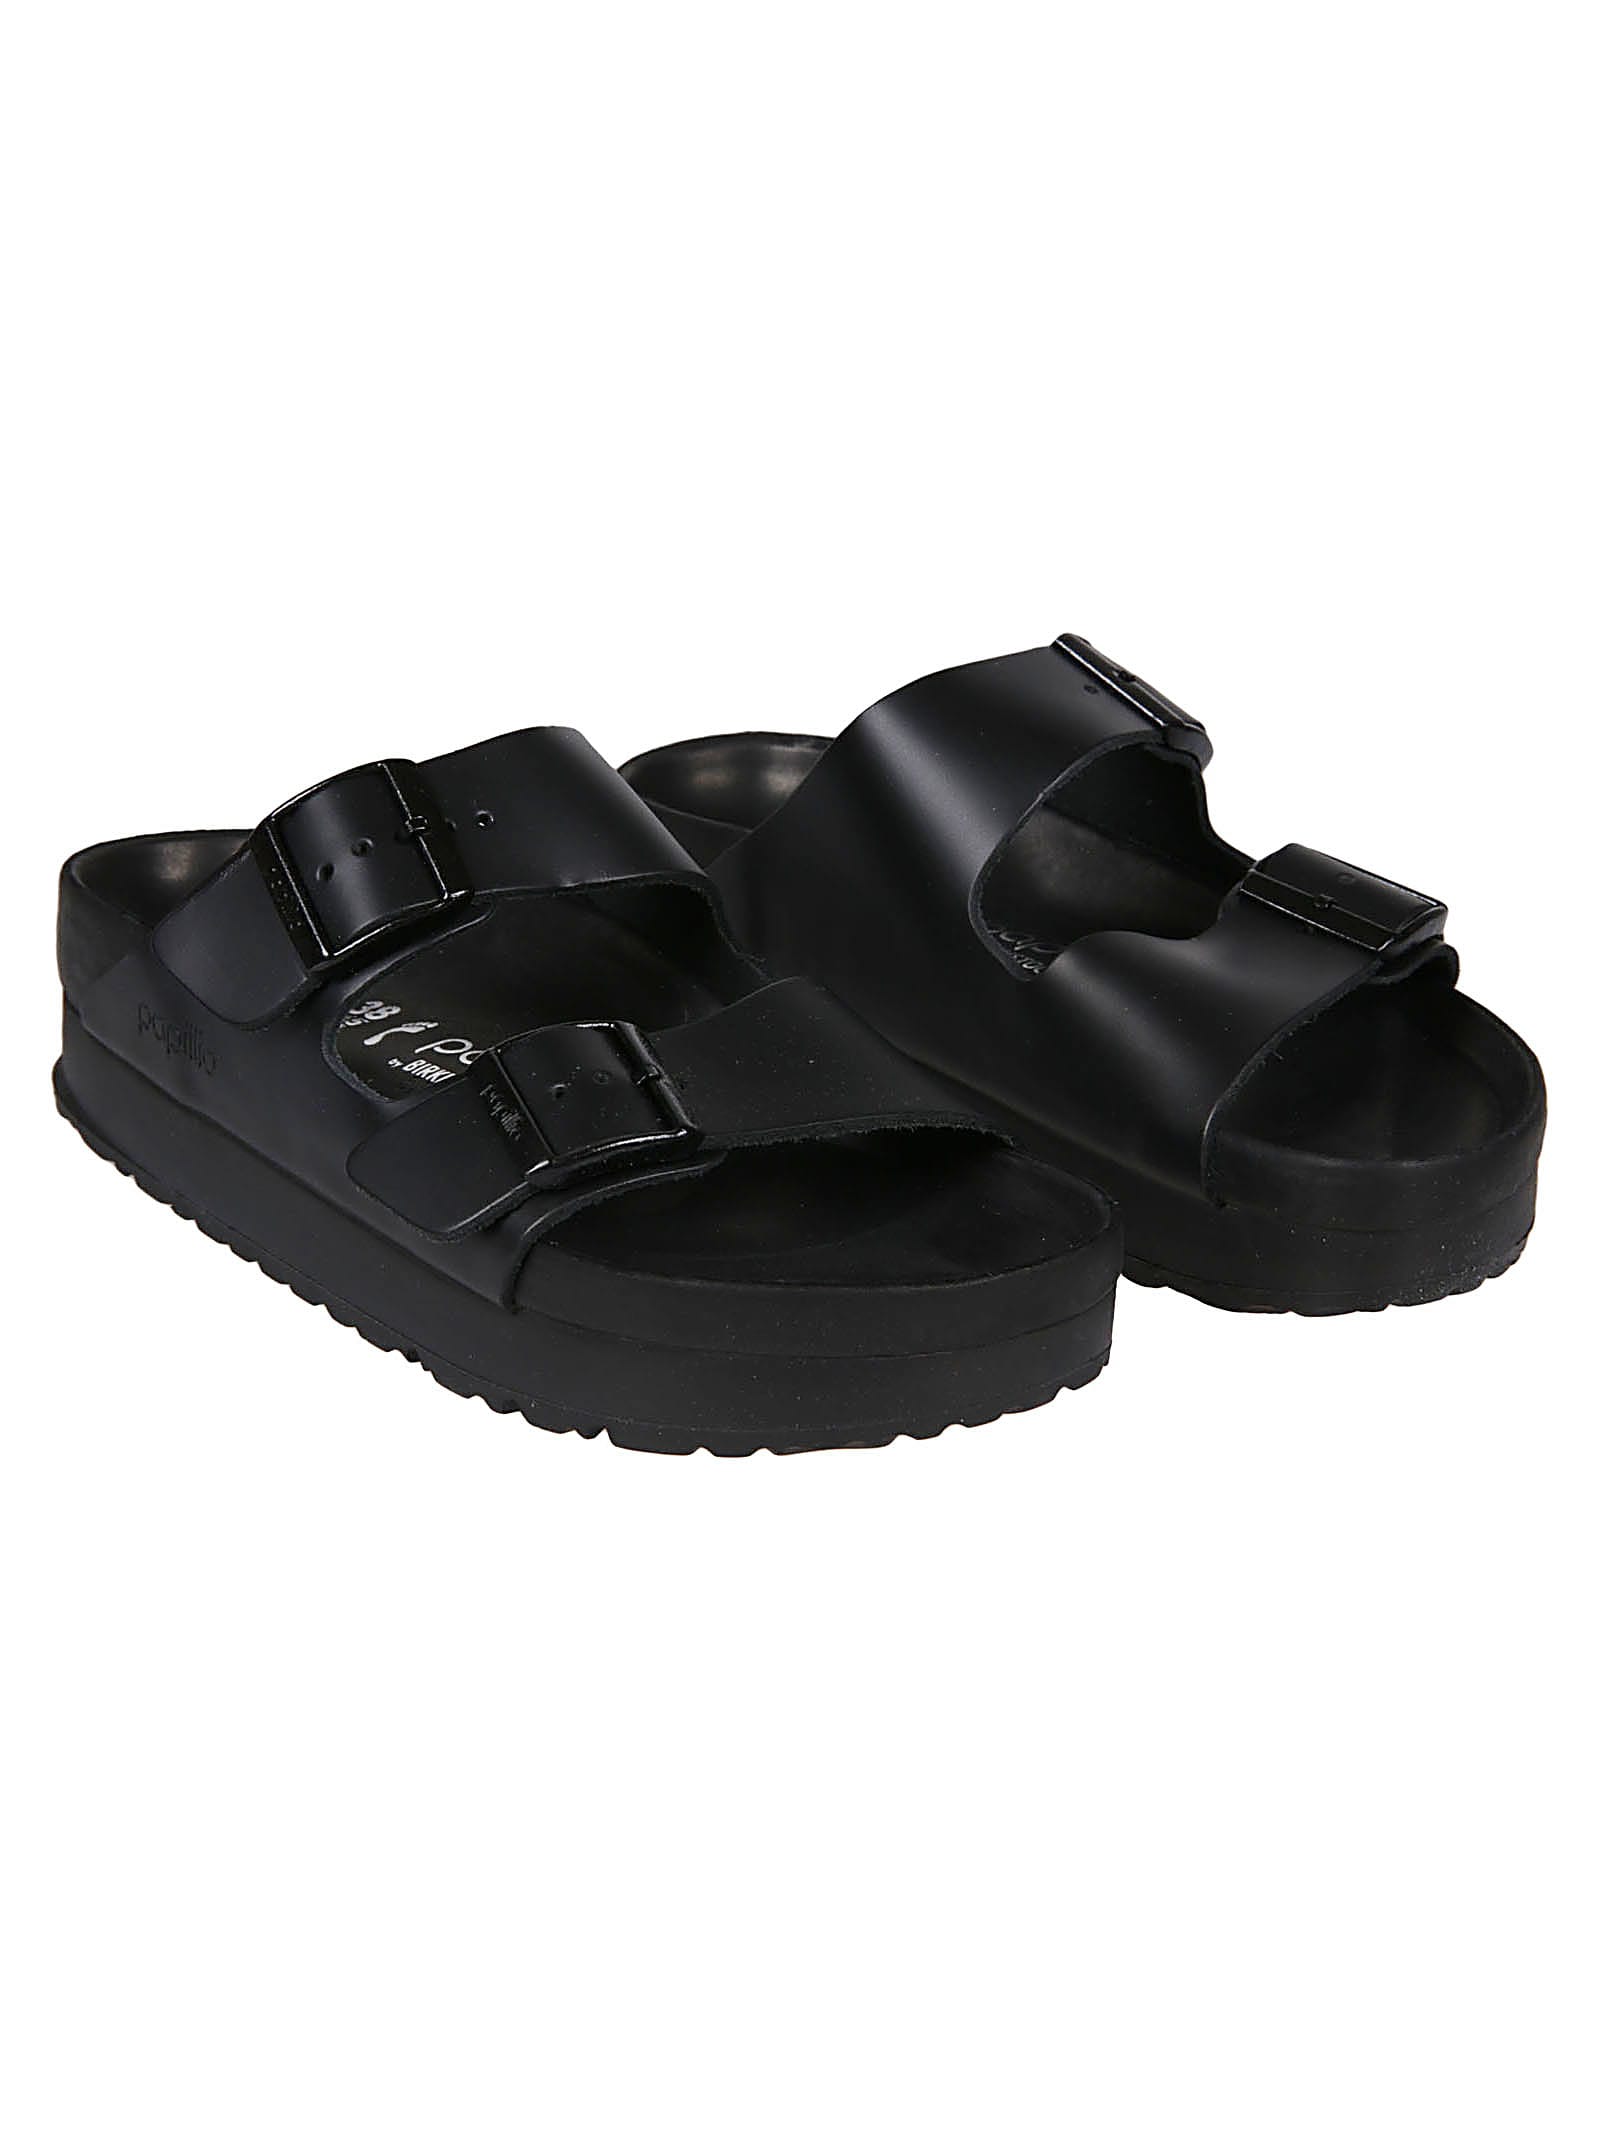 Shop Birkenstock Arizona Plat Exquisite Sandals In Black